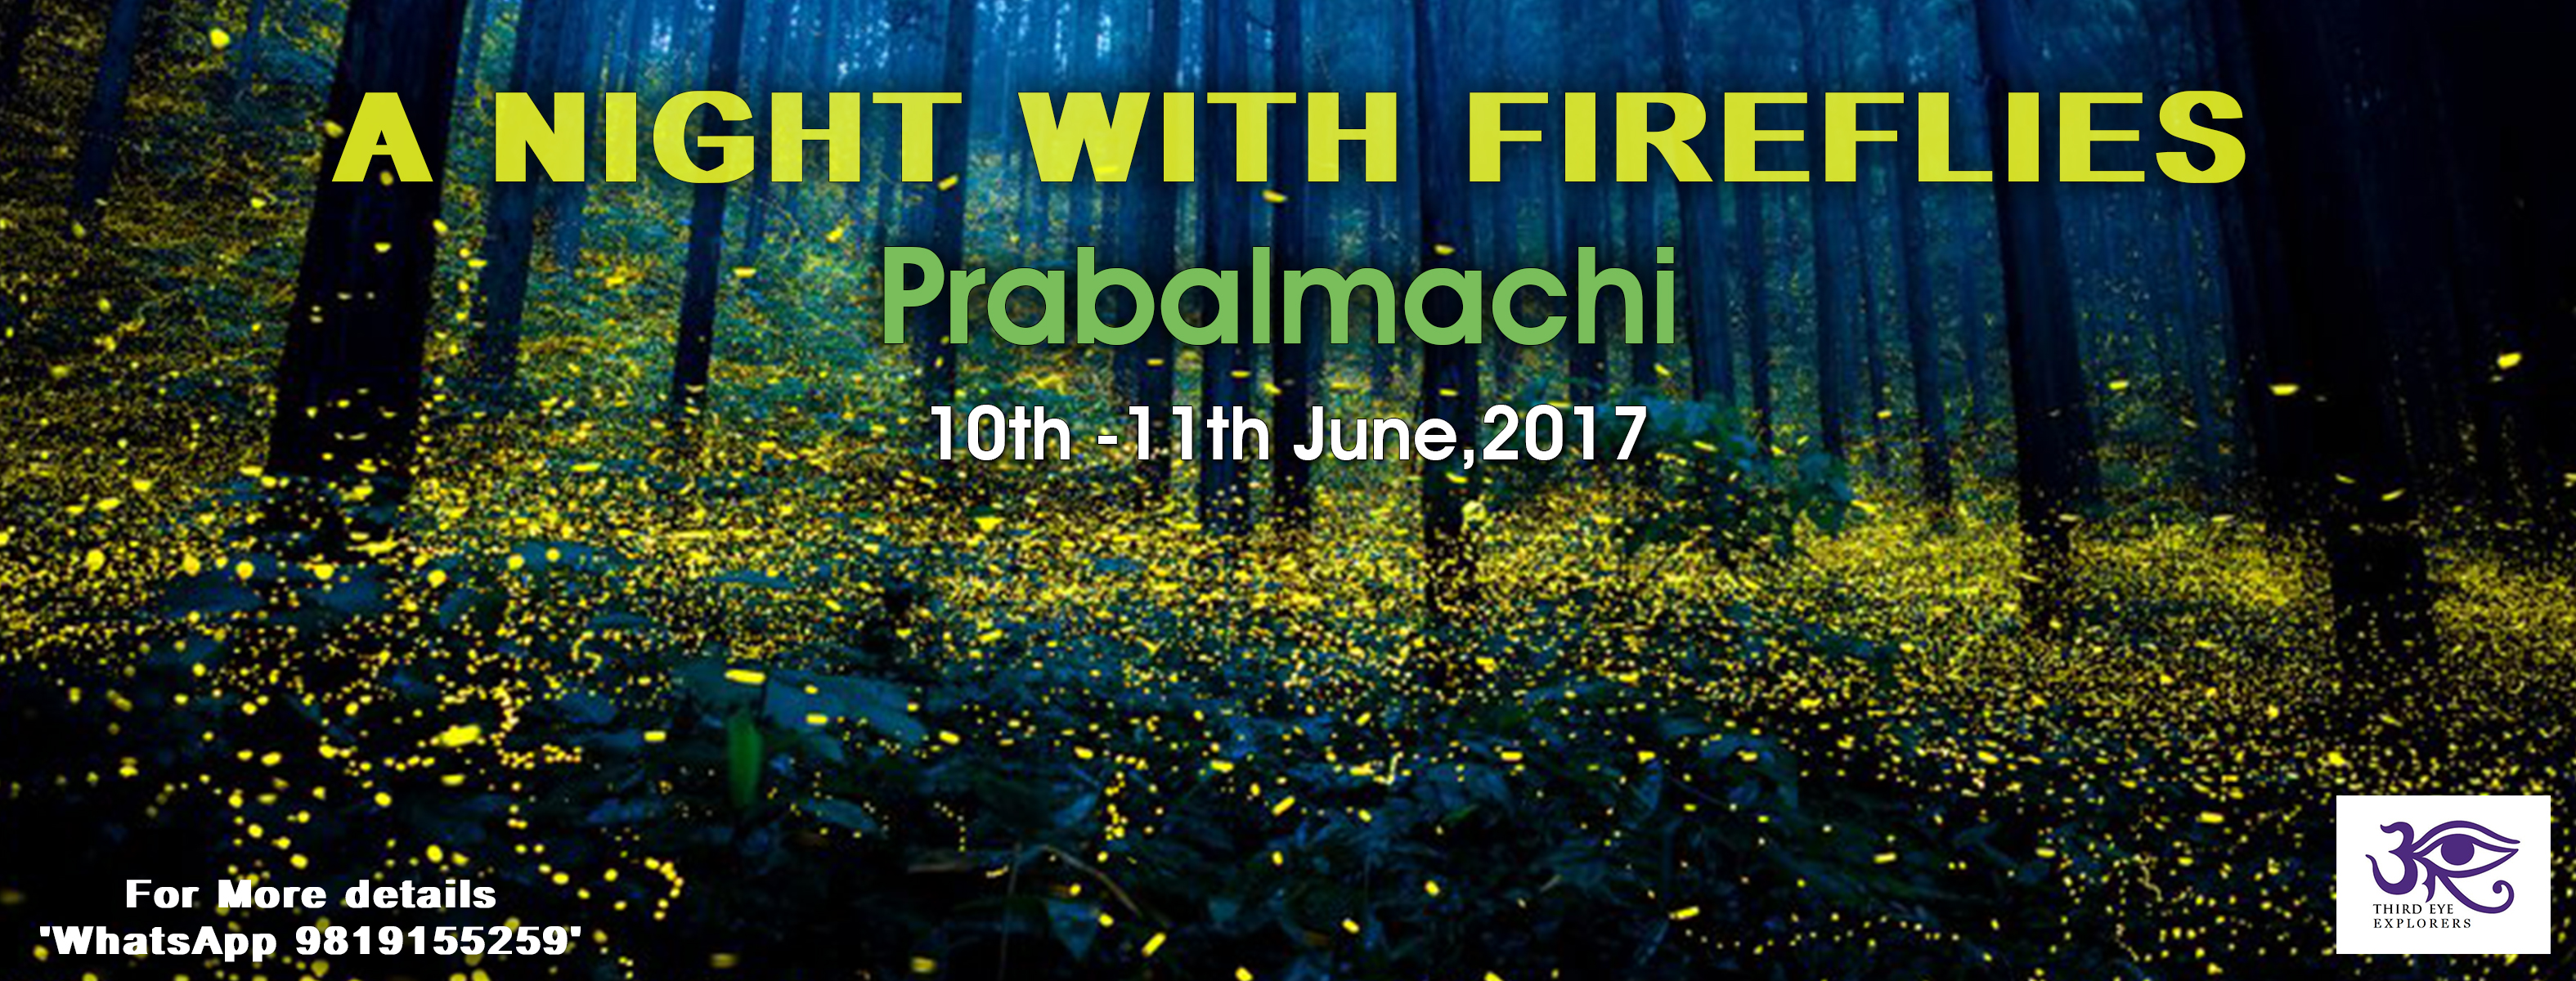 Fireflies at Prabalmachi